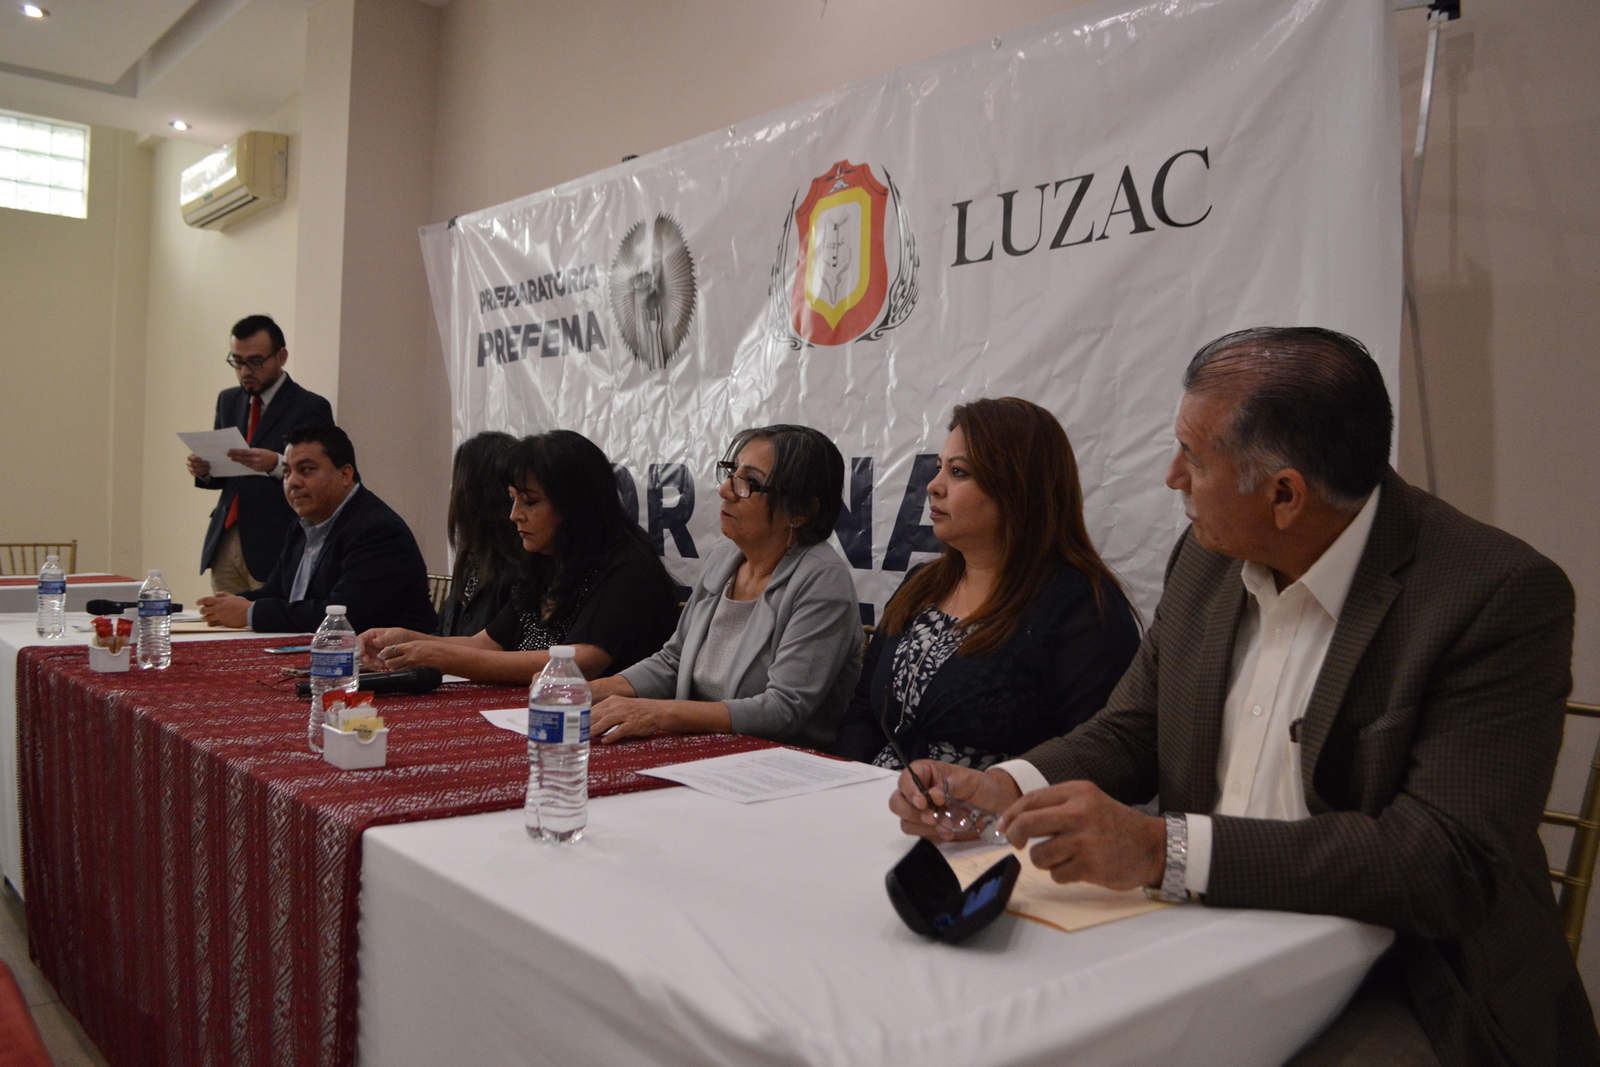 Luzac apoyará a la Prefema con un proyecto de colaboración integral para su rescate en el mediano y largo plazo. (ROBERTO ITURRIAGA)